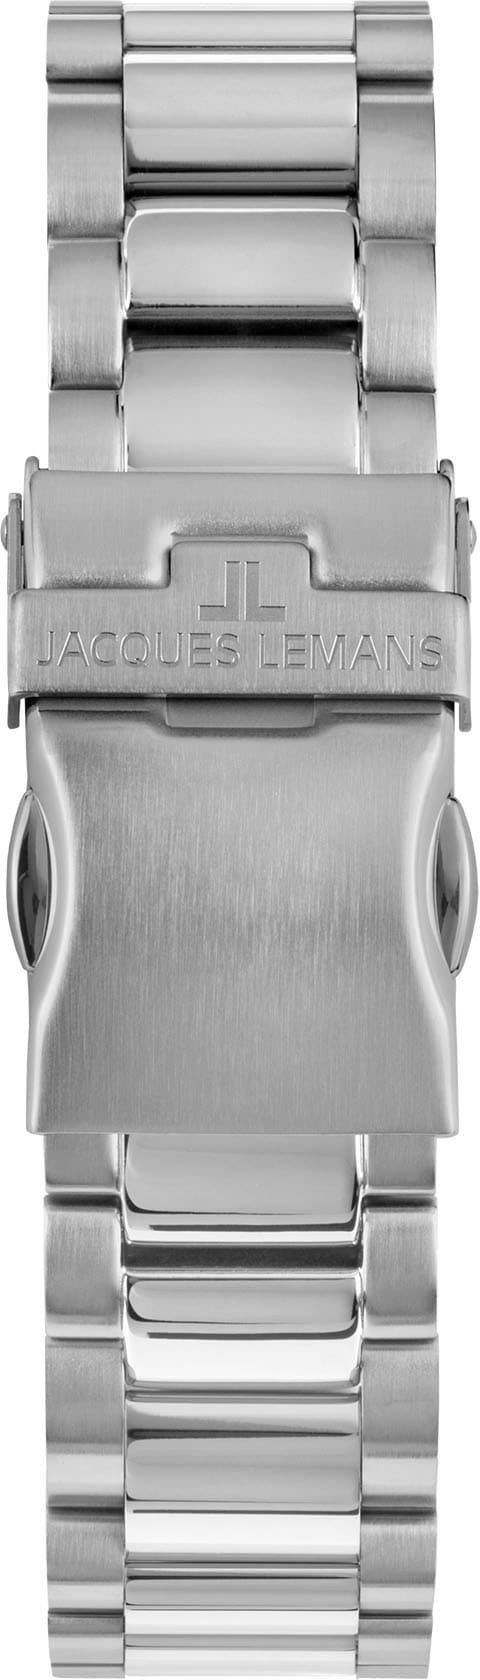 Jacques Lemans Chronograph Liverpool 1-2140K